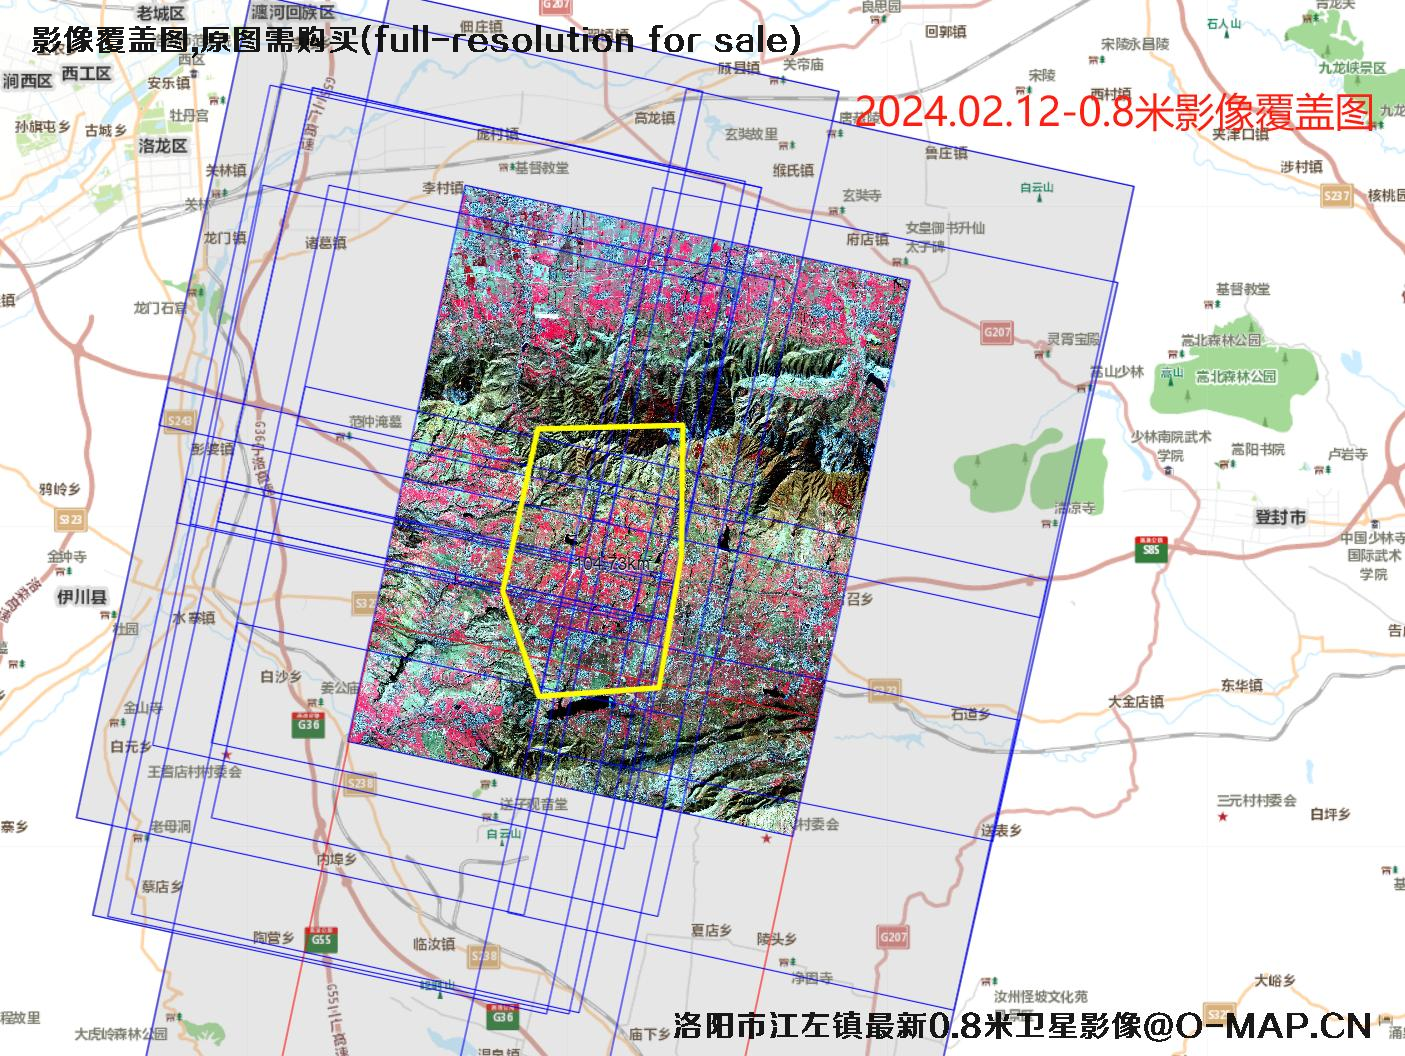 河南省洛阳市江左镇最新【0.5米-0.75米-0.8米】卫星影像图